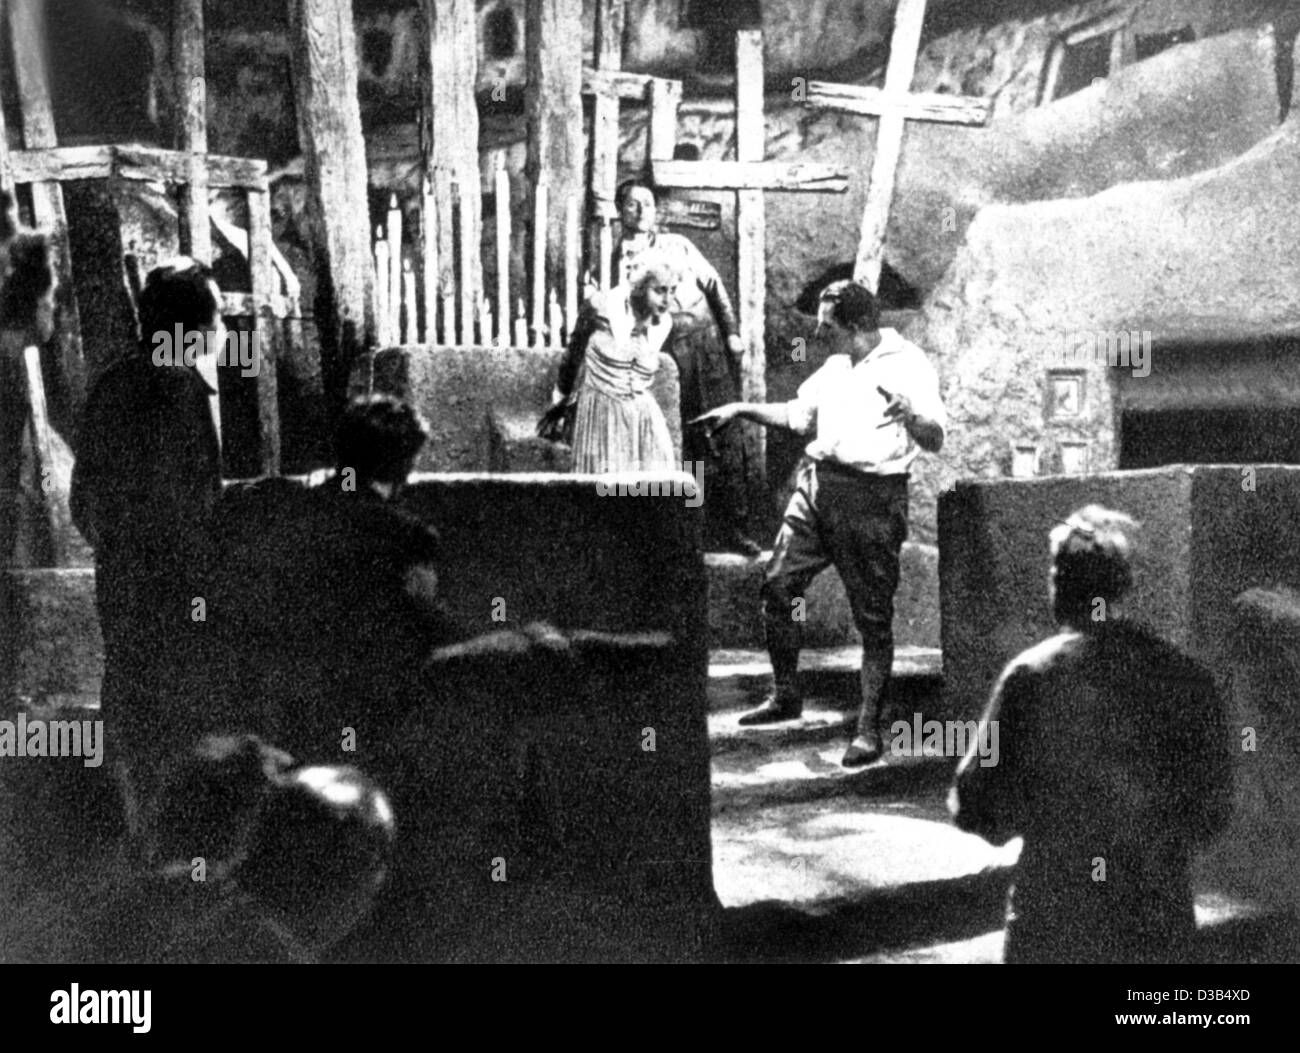 (Dpa) - Fritz Lang (C) droit, Austrian-American directeur de film, donne des instructions à son actrice Brigitte Helm (C) sur le tournage de 'Metropolis', Allemagne, 1927. 'Metropolis' est un film de science-fiction dans laquelle les travailleurs, dirigé par la belle Maria, planifier une révolte contre l'écart Thinke Banque D'Images